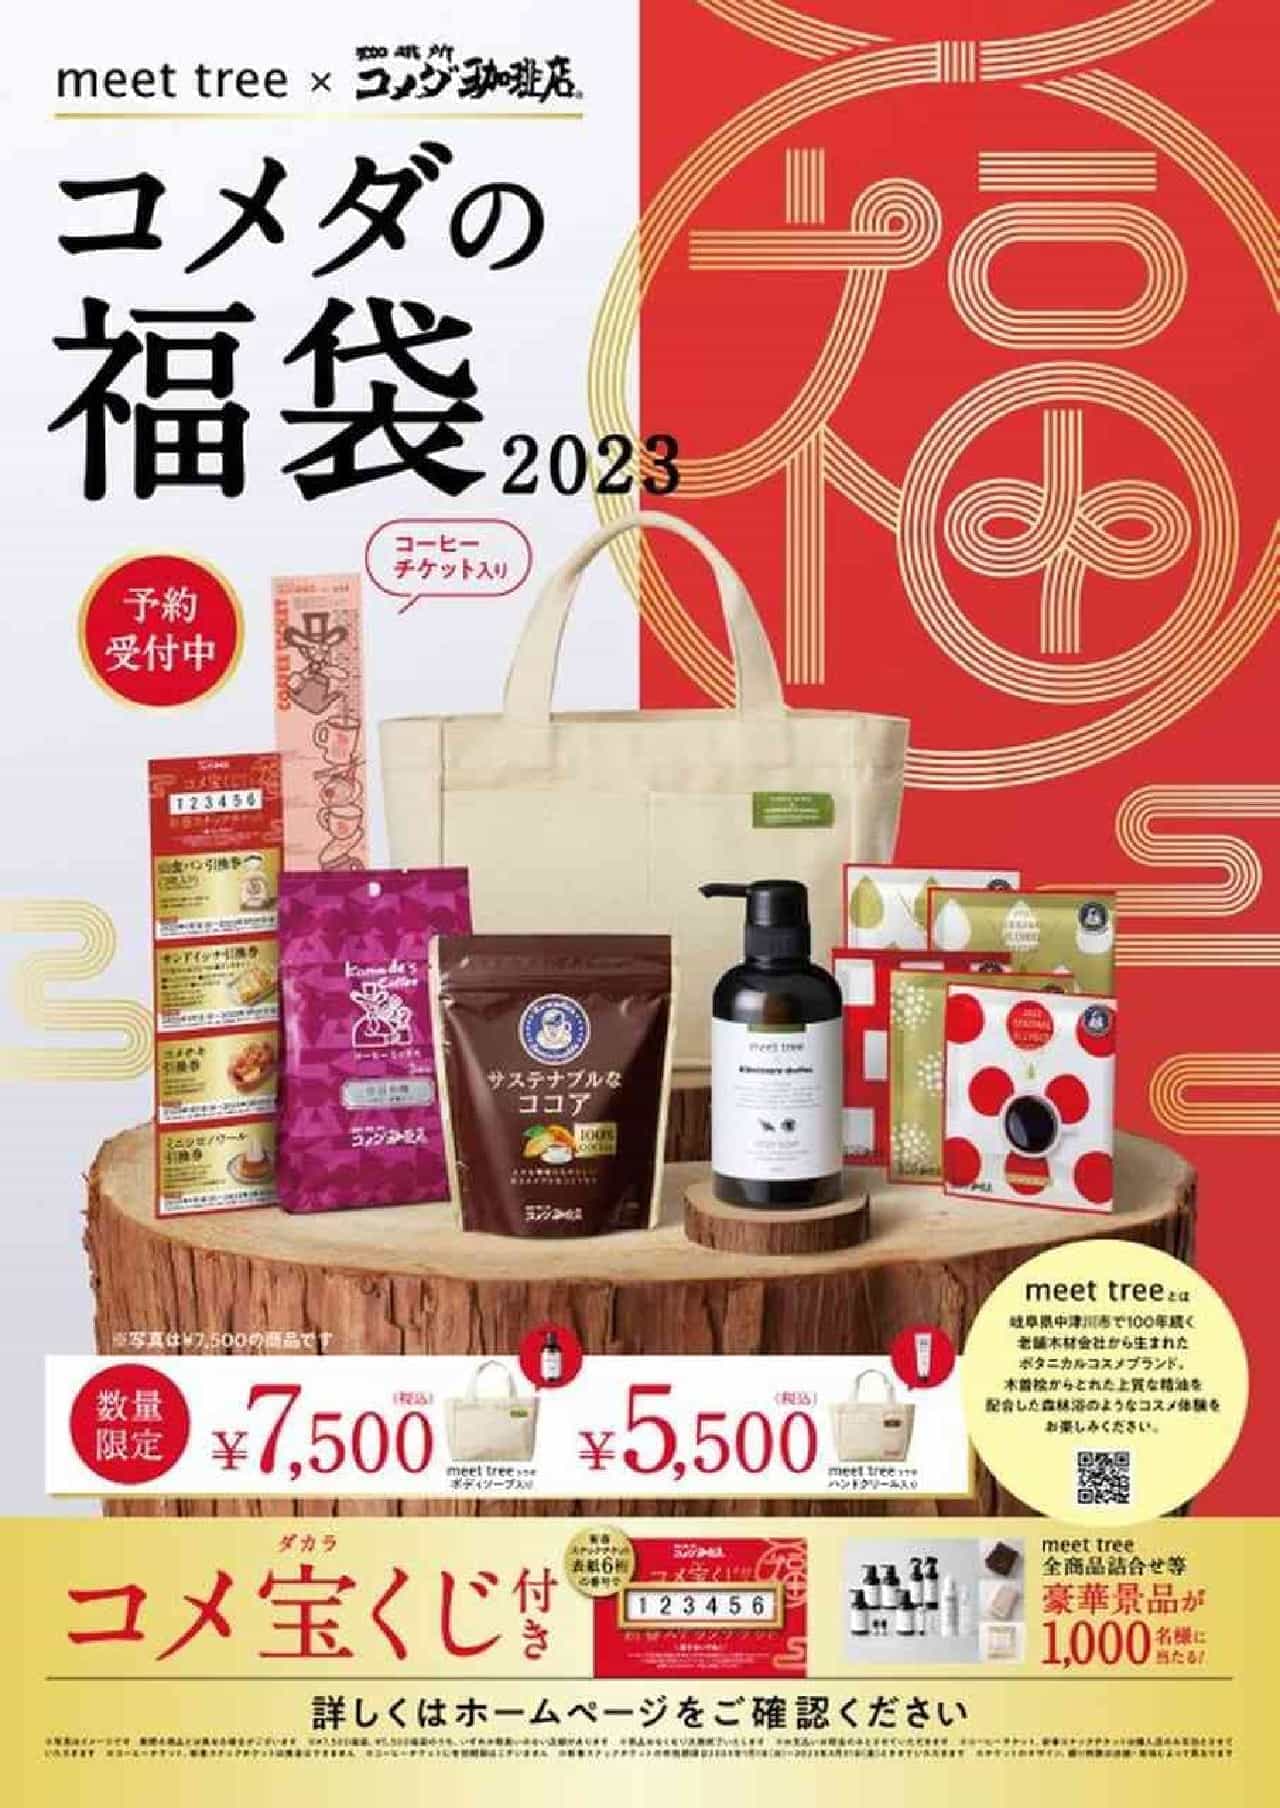 Komeda Coffee Shop "Komeda's Goodie Bag for 2023".